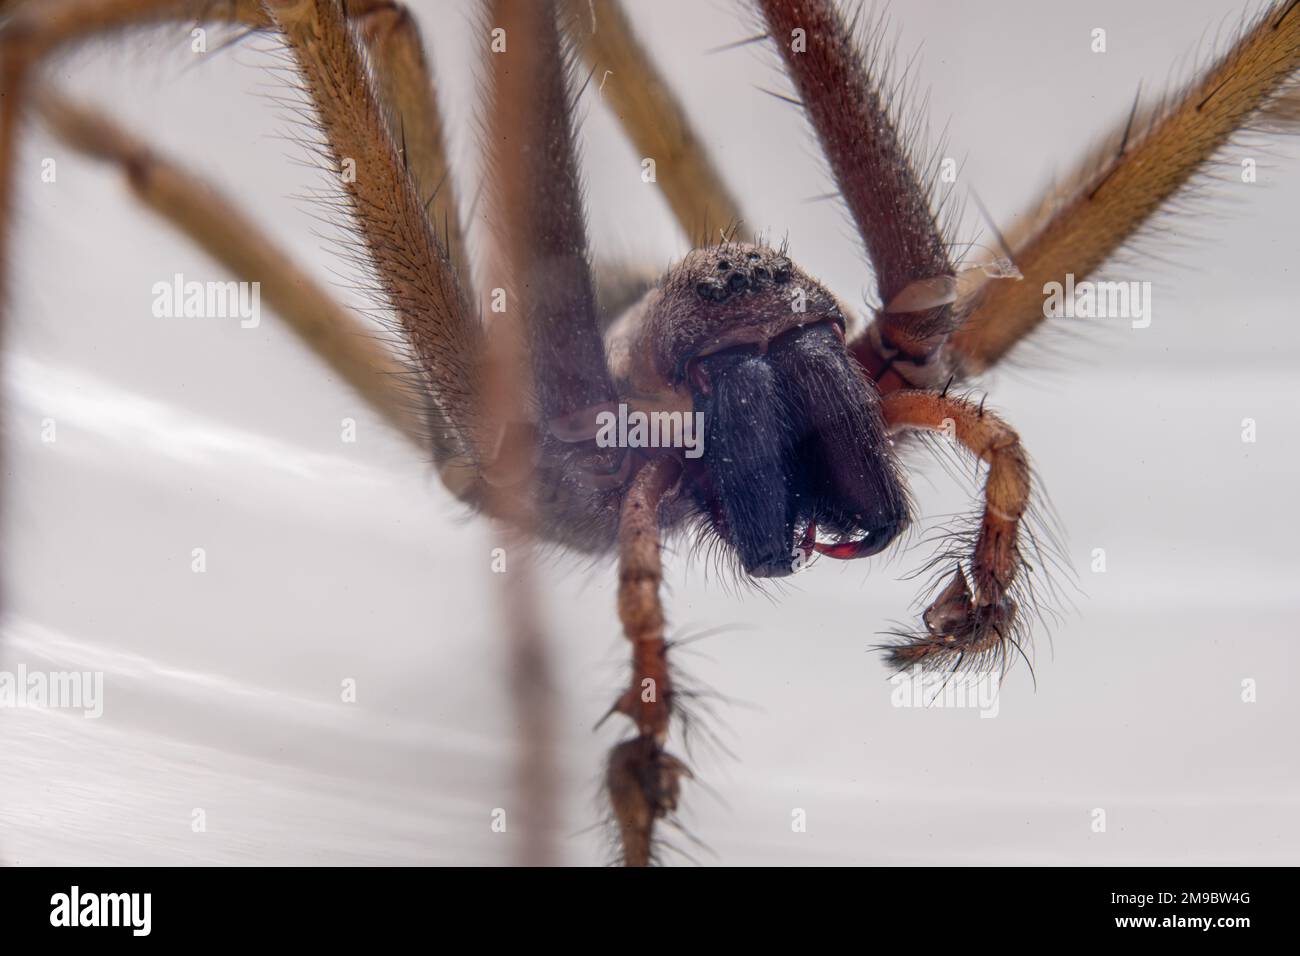 Macro photo of a Eratigena atrica also known as Giant house spider Stock Photo